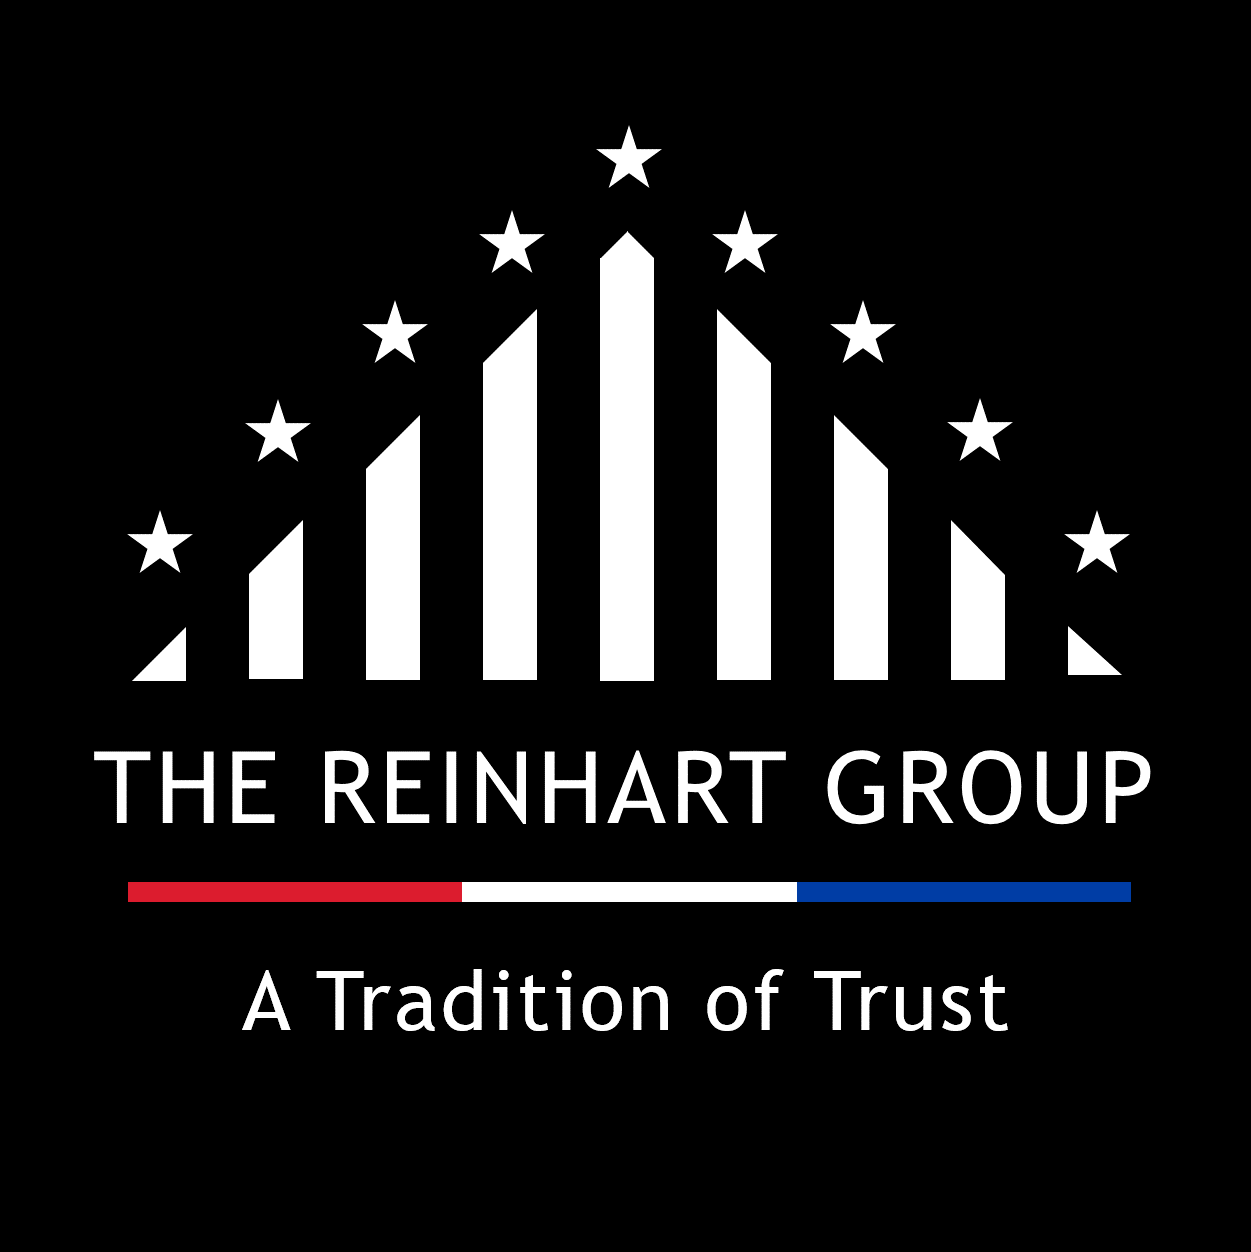 The Reinhart Group